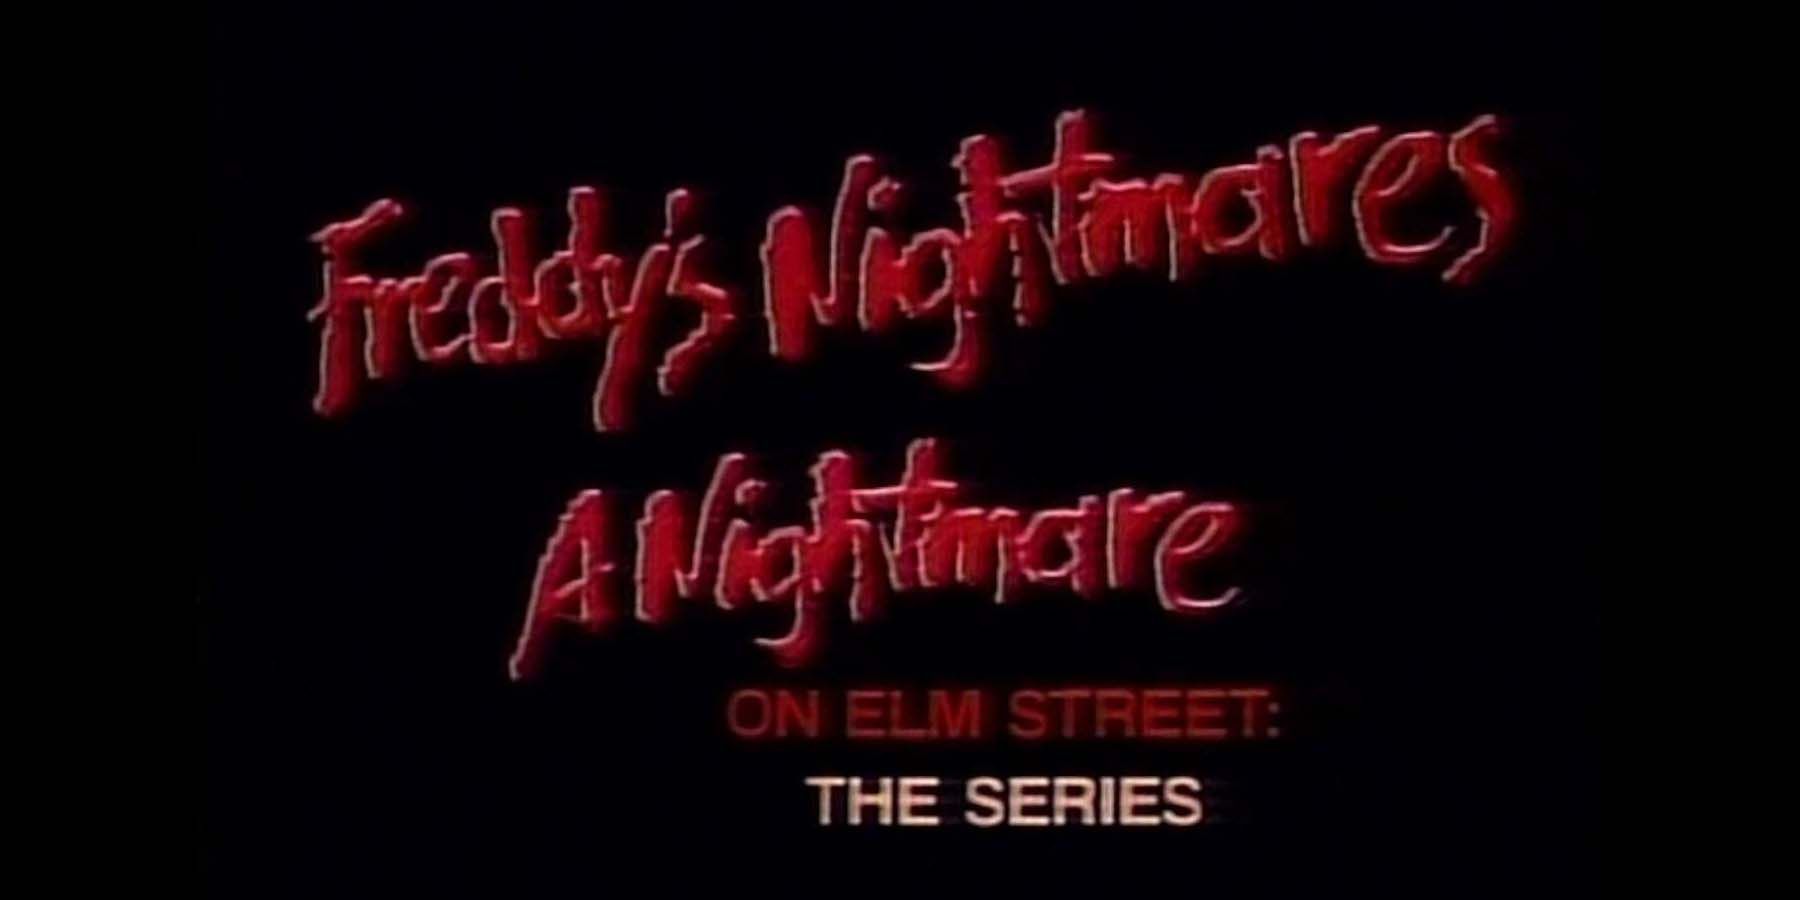 Freddy's Nightmares series